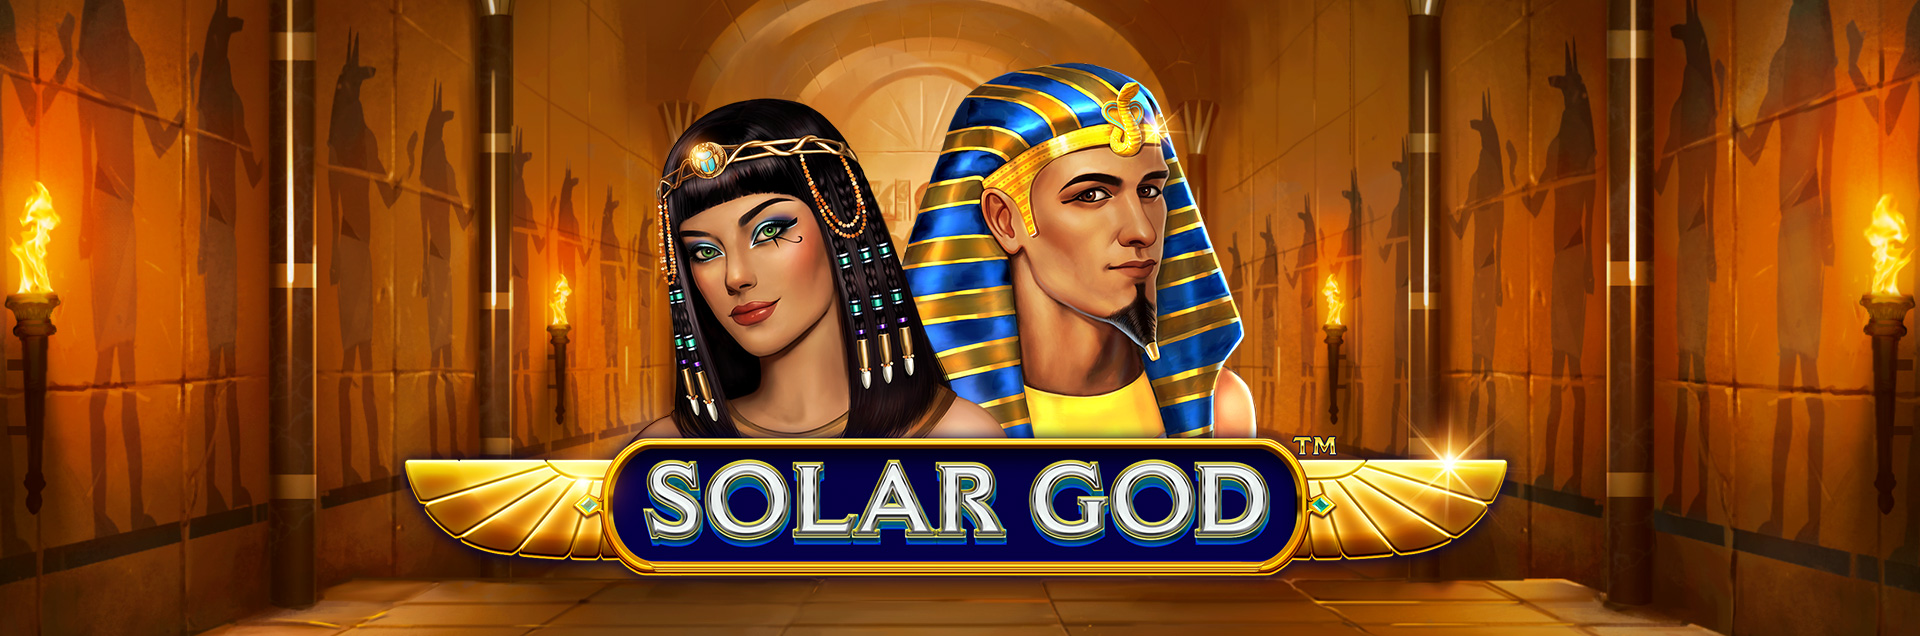 Solar God header games